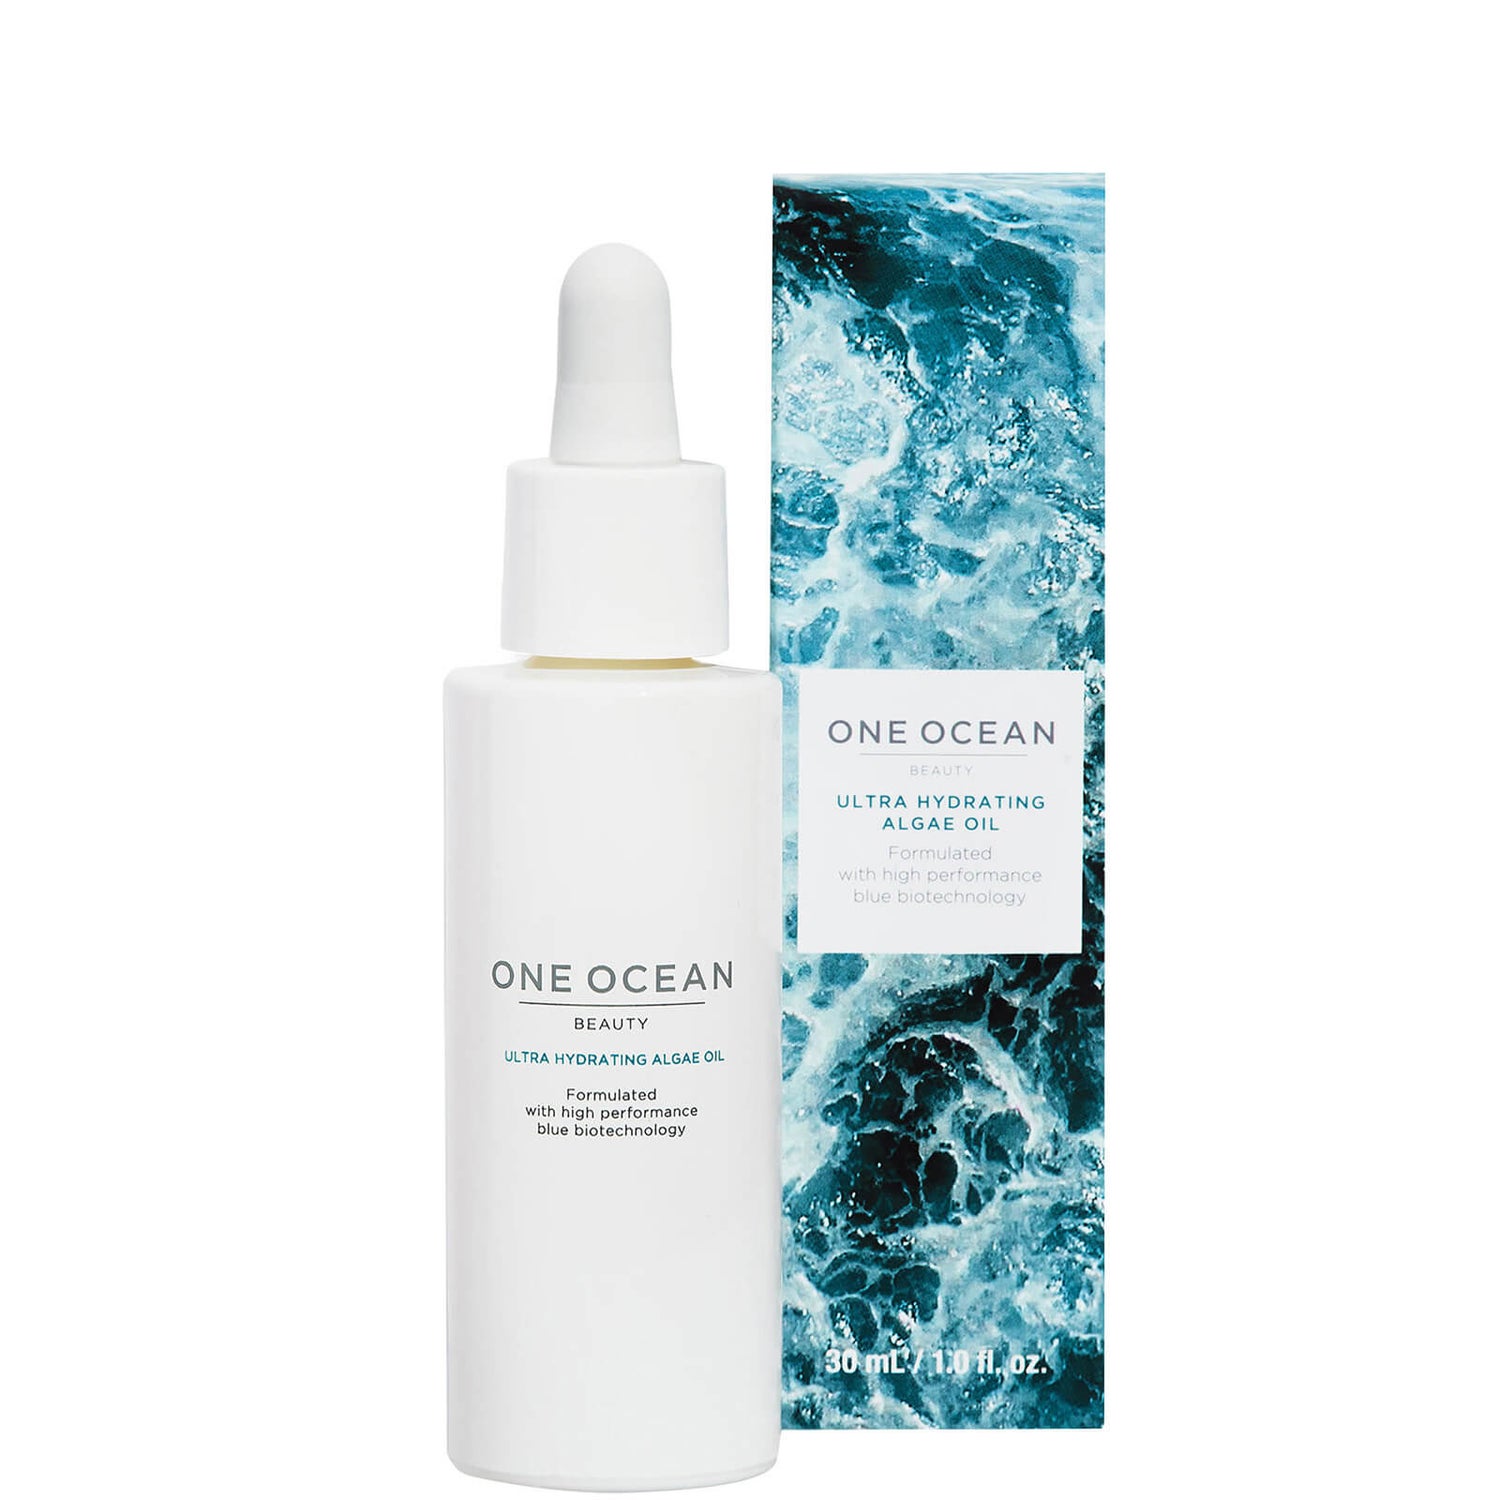 One Ocean Beauty Algae Oil for Face and Hair